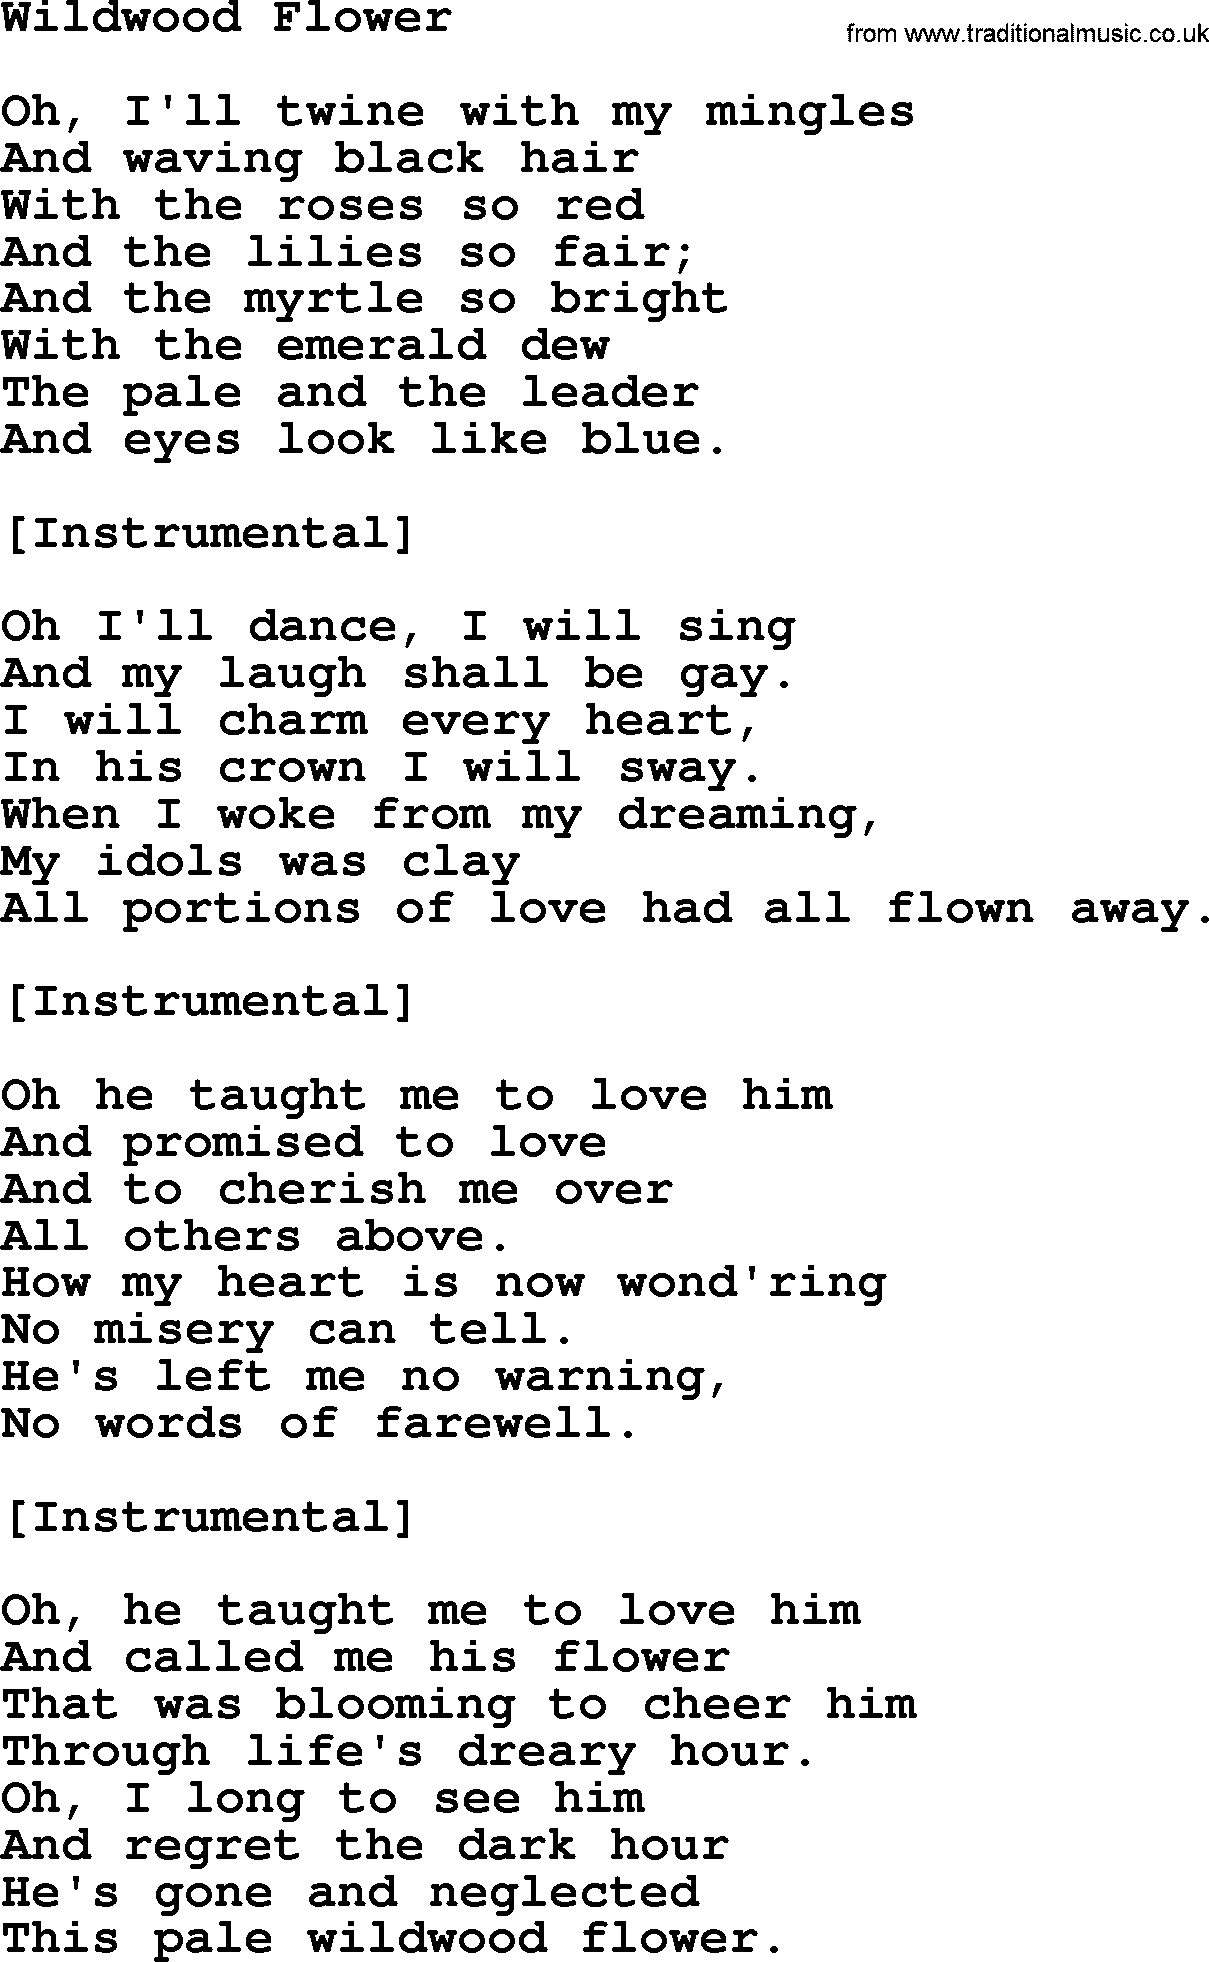 Joan Baez song Wildwood Flower, lyrics